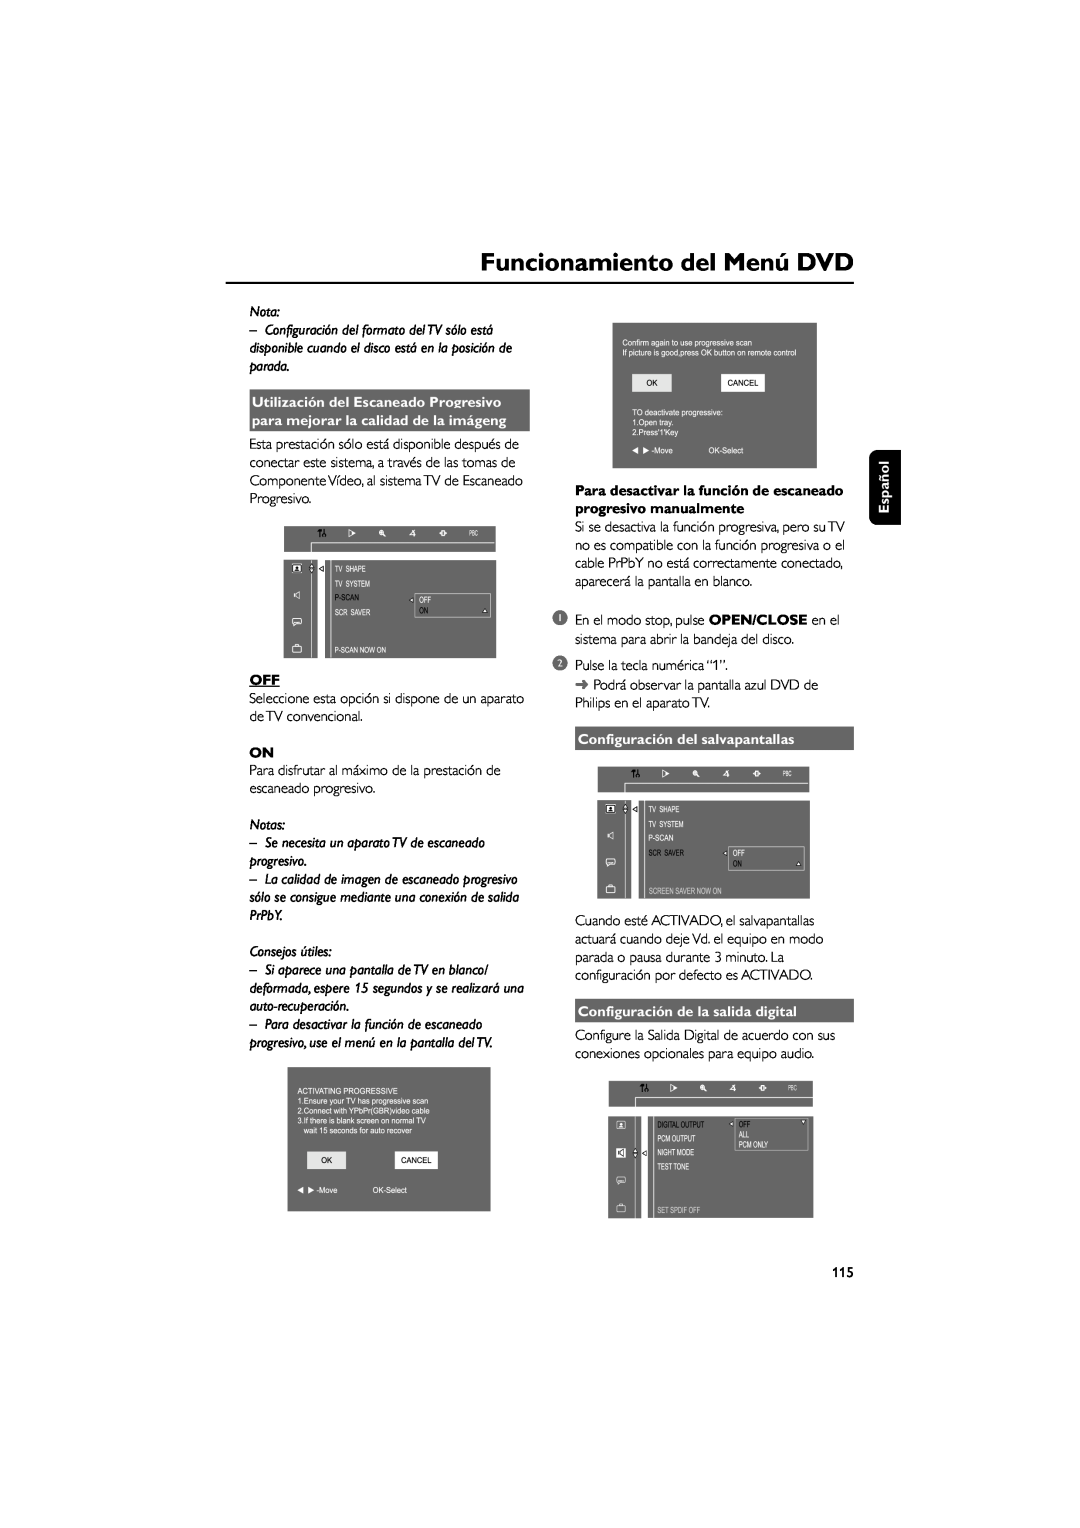 Philips FWD39 Utilización del Escaneado Progresivo, para mejorar la calidad de la imágeng, Consejos útiles, Notas 